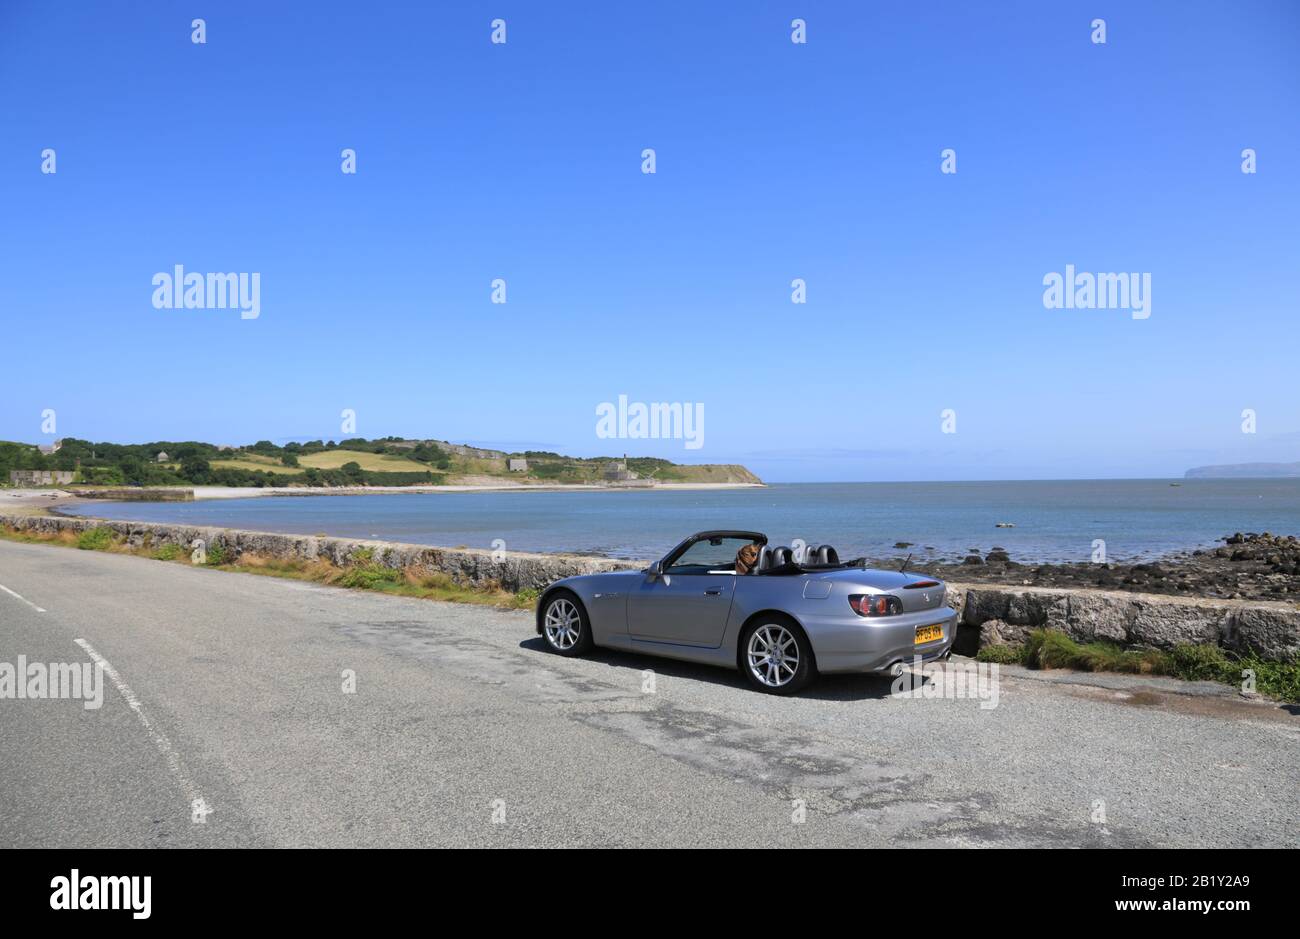 Ein silberner Honda S2000-Sportwagen, der am Meer in Wales, Großbritannien, geparkt ist. Stockfoto